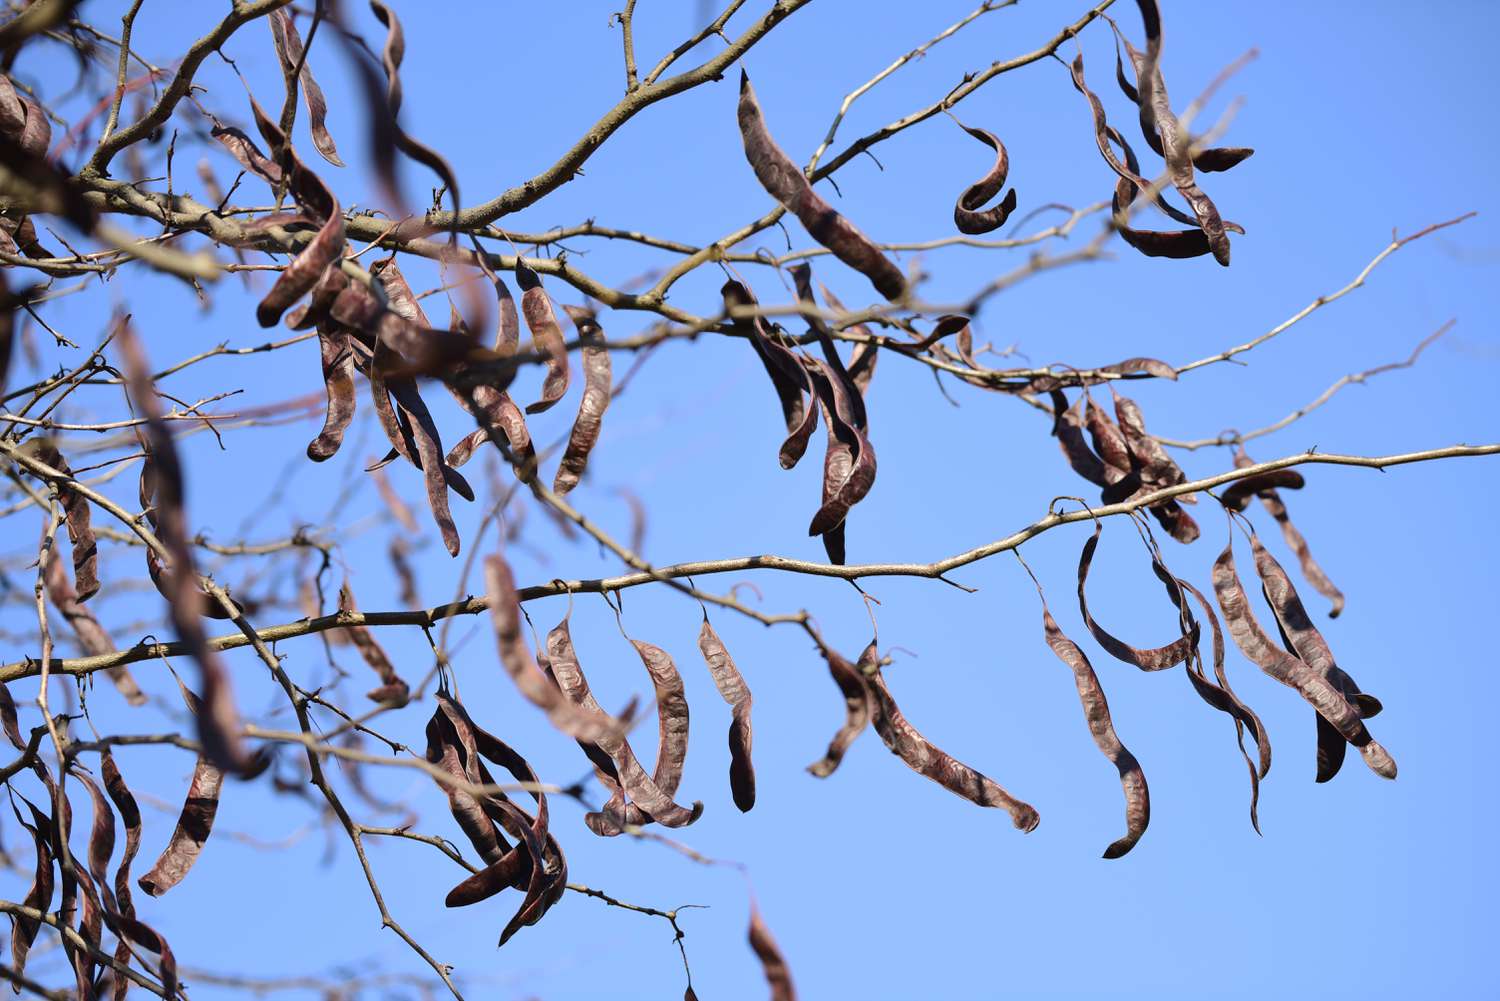 Rama del árbol de langosta de miel Sunburst con ramas desnudas y vainas de semillas marrones colgando